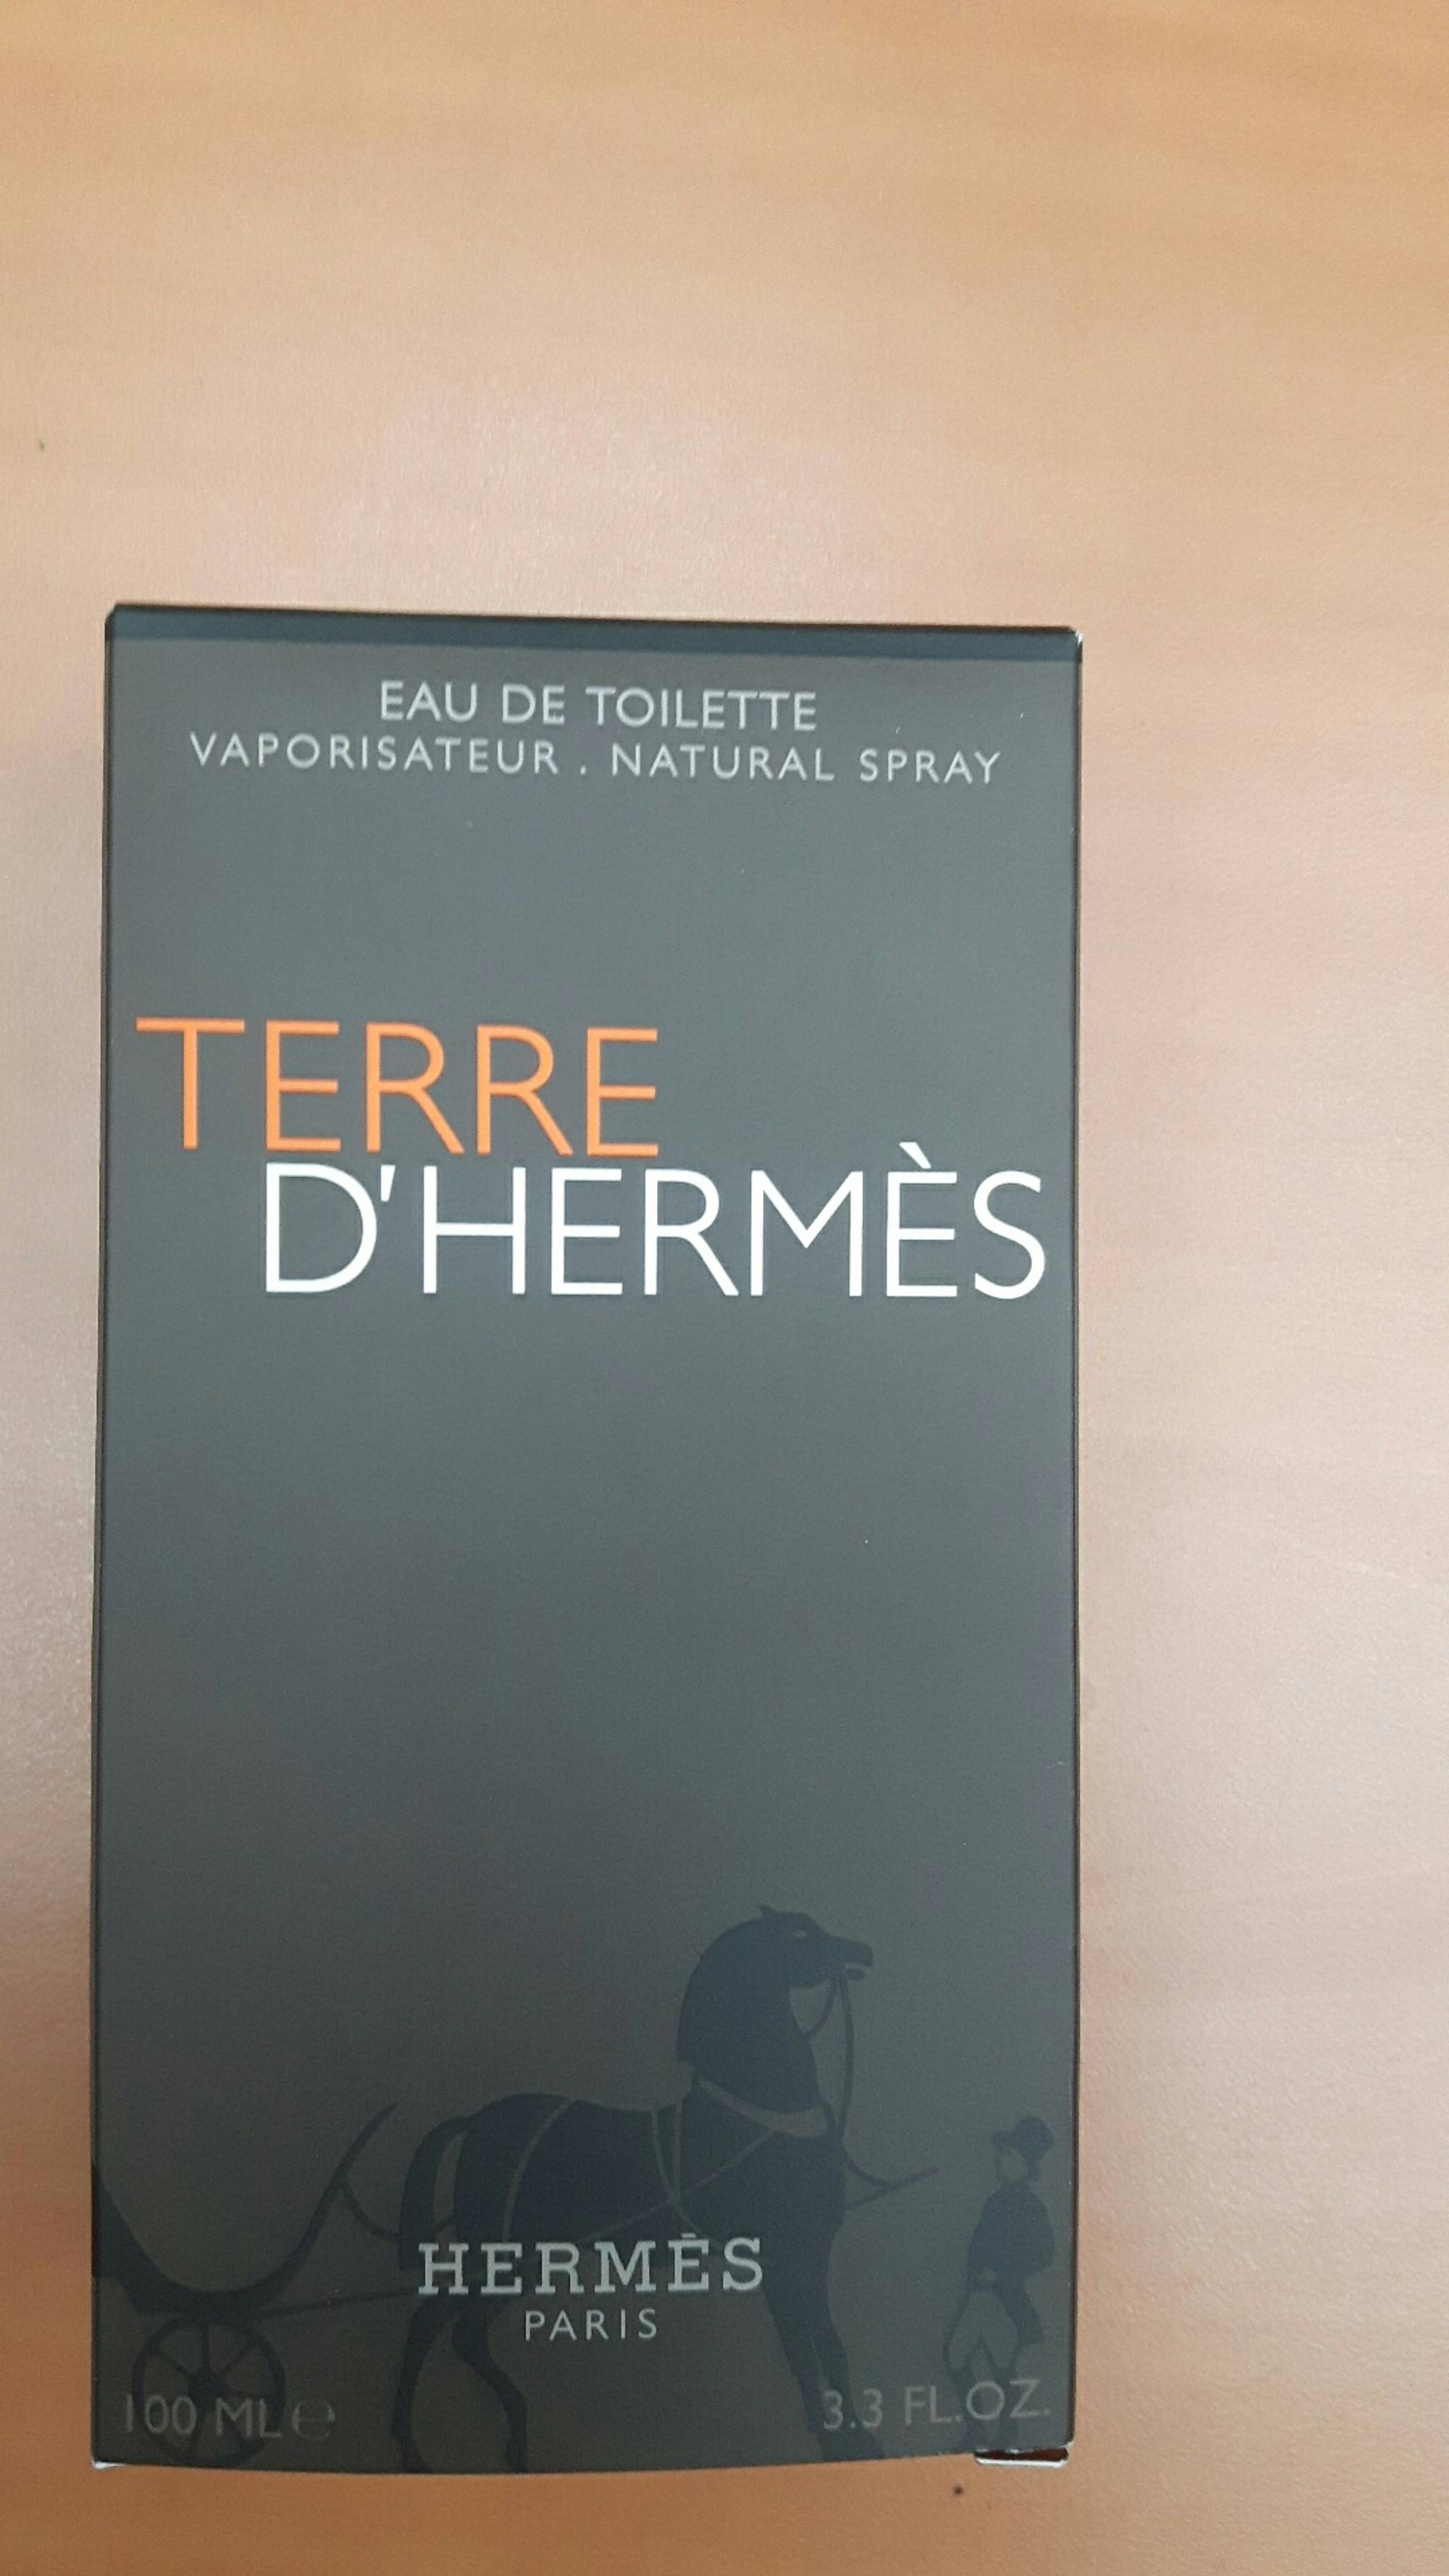 HERMES - Terre d'hermès - Eau de toilette